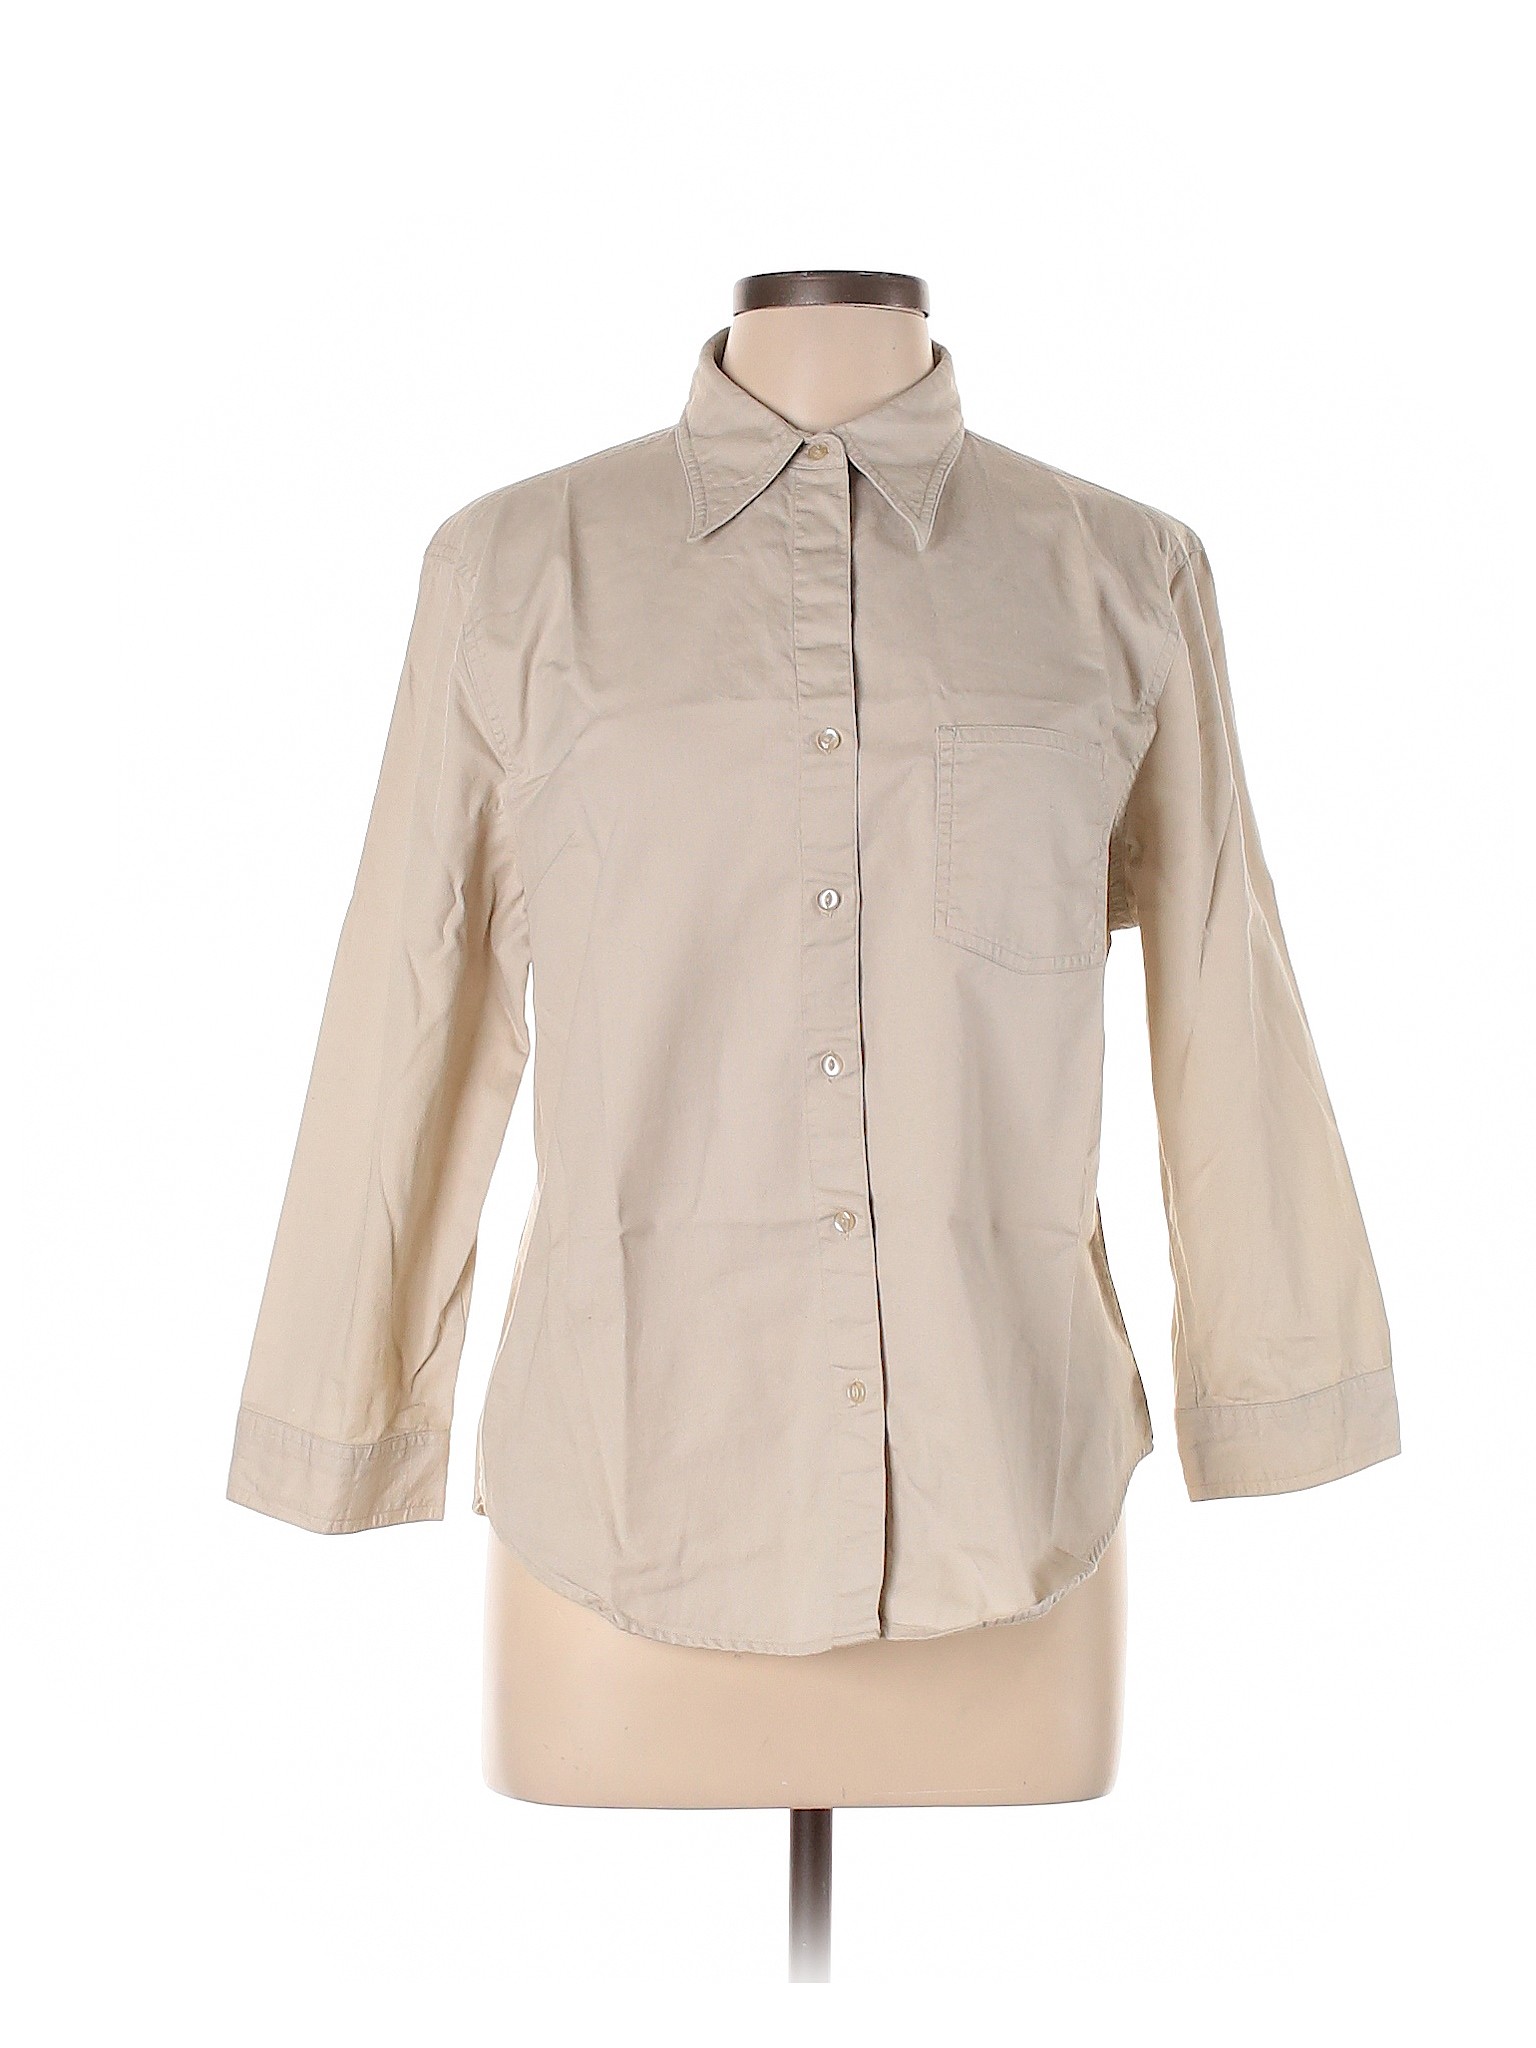 Assorted Brands Women Brown Long Sleeve Button-Down Shirt L | eBay